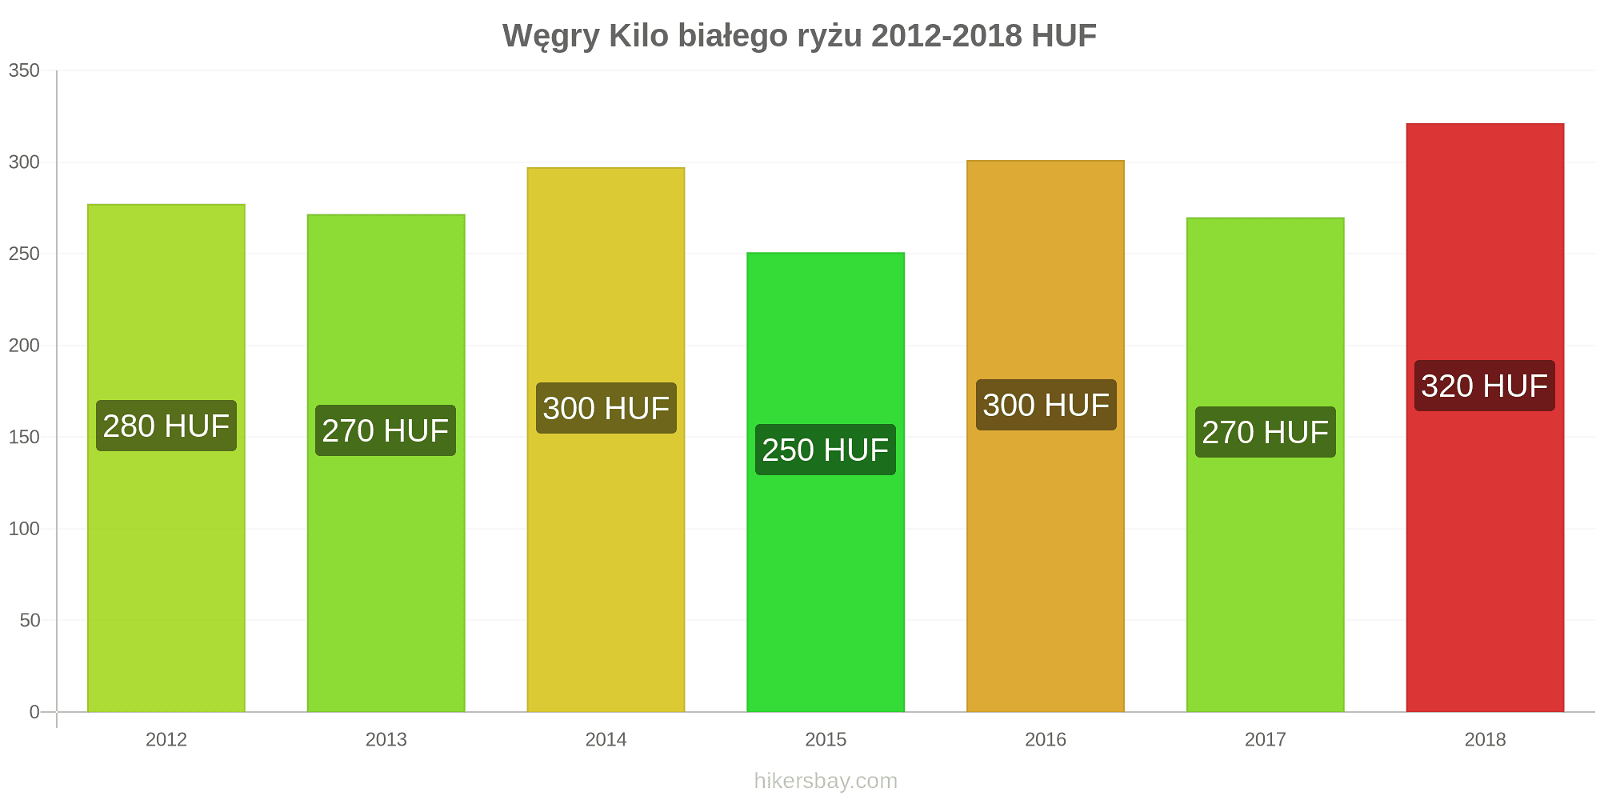 Węgry zmiany cen Kilo białego ryżu hikersbay.com